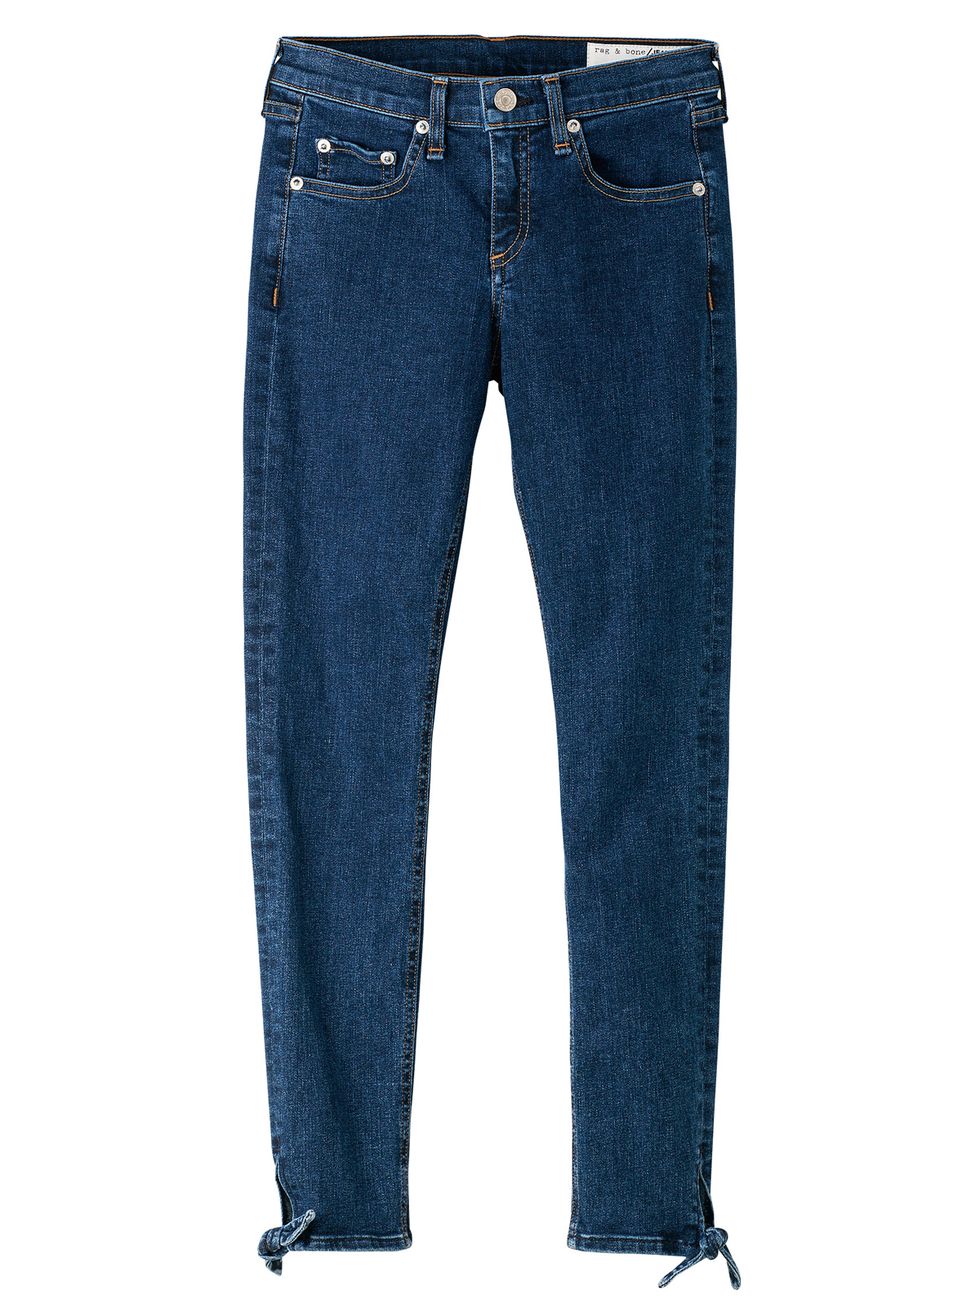 Denim, Jeans, Clothing, Blue, Pocket, Textile, Trousers, Electric blue, Carpenter jeans, 